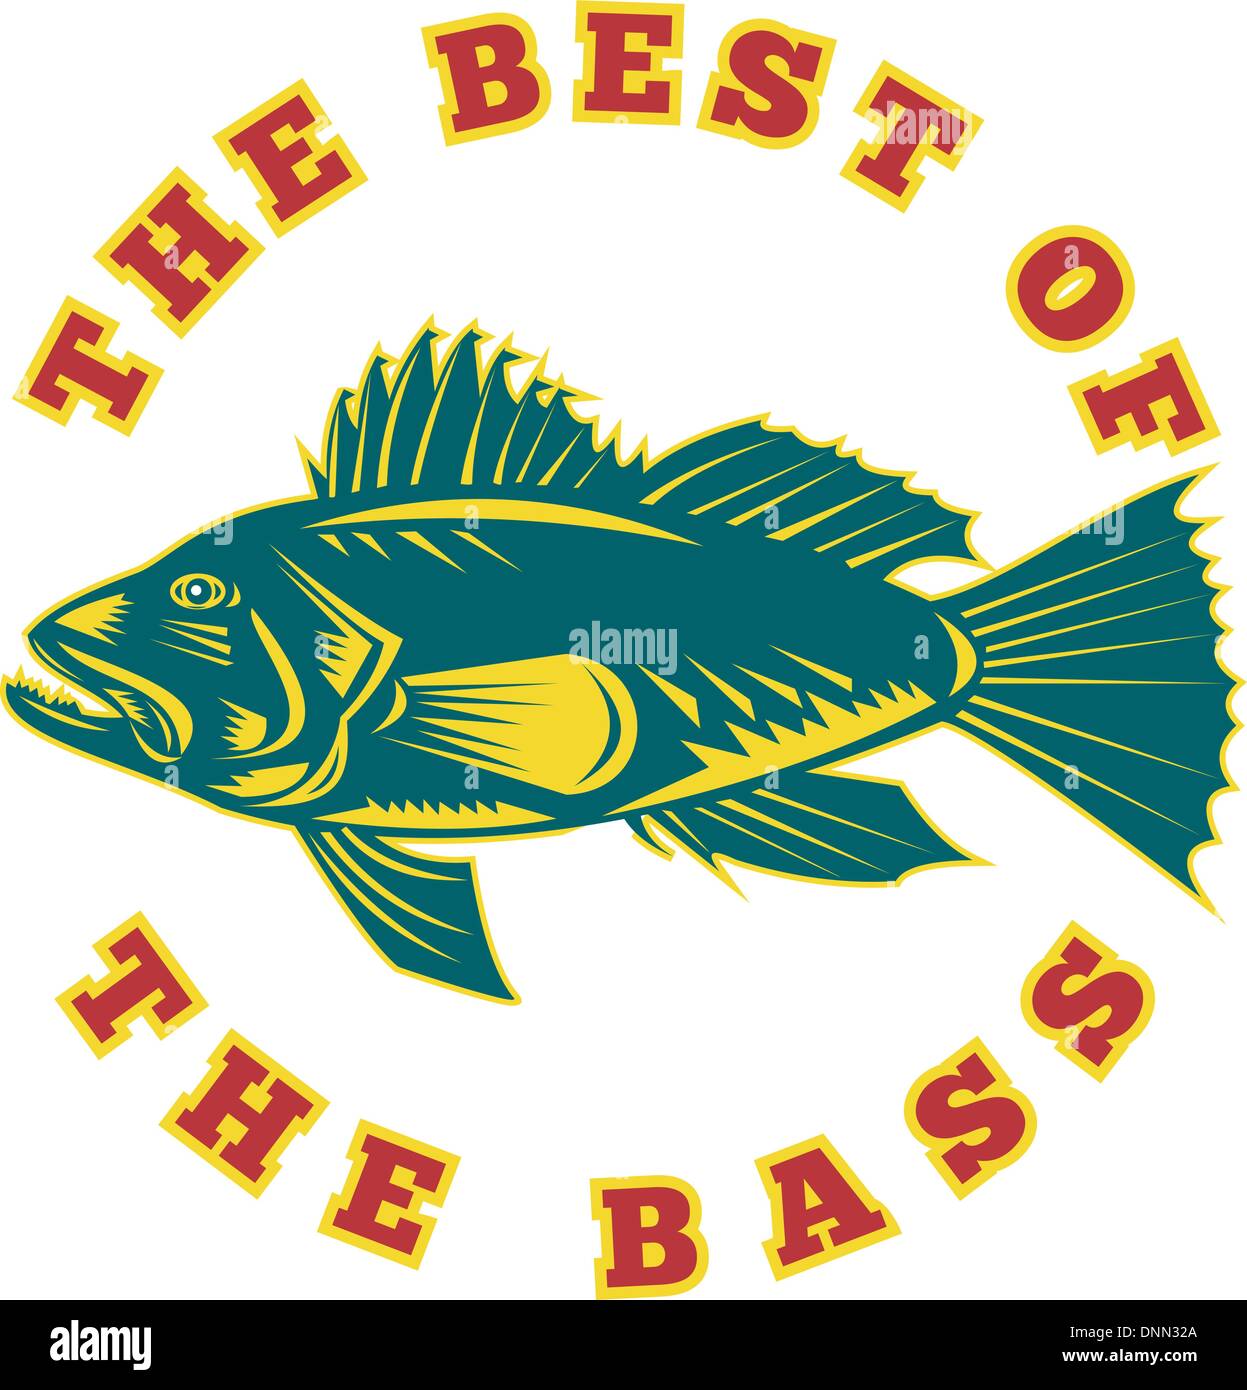 Illustrazione di un branzino pesce visto dal lato con le parole 'il meglio della bass" fatto rétro xilografia style Illustrazione Vettoriale